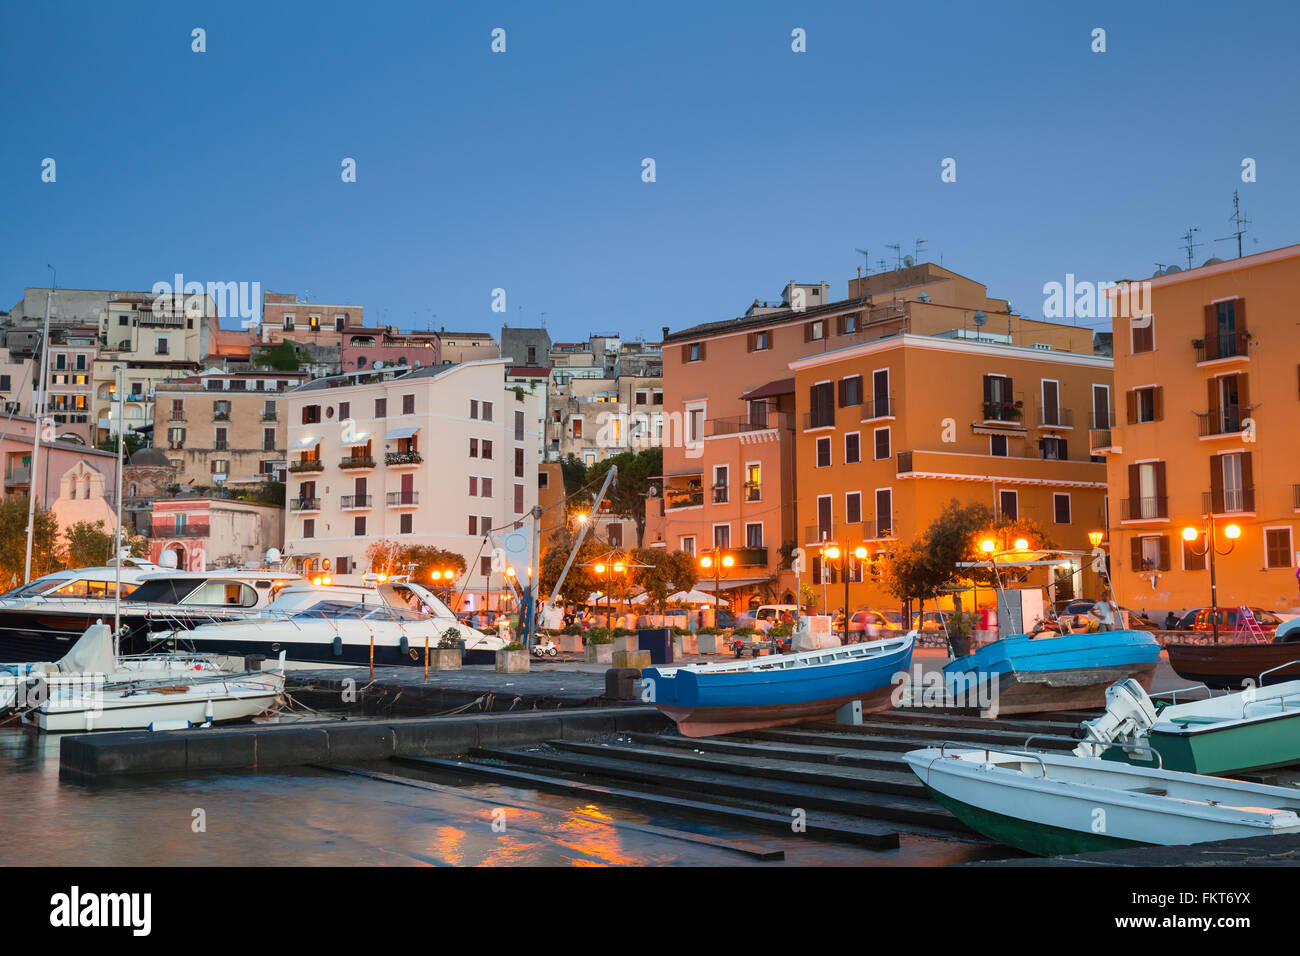 Alten Hafen ankern Motorboote und Yachten. Nacht Stadtbild der Stadt Gaeta, Italien Stockfoto